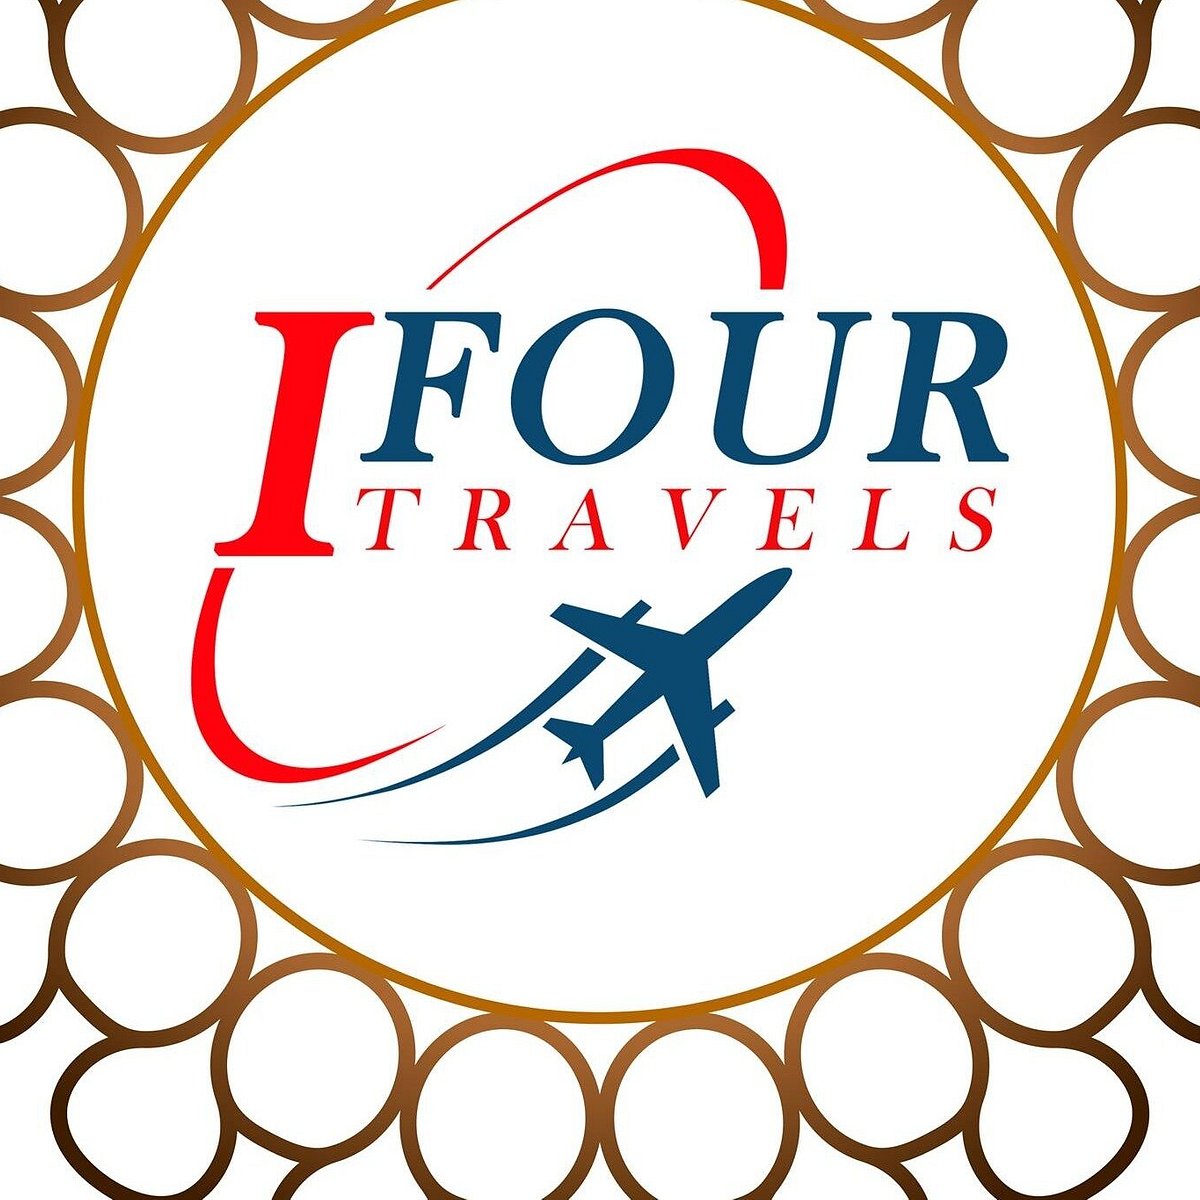 I FOUR TRAVELS AND TOURS (Colombo, Sri Lanka): Hours, Address - Tripadvisor